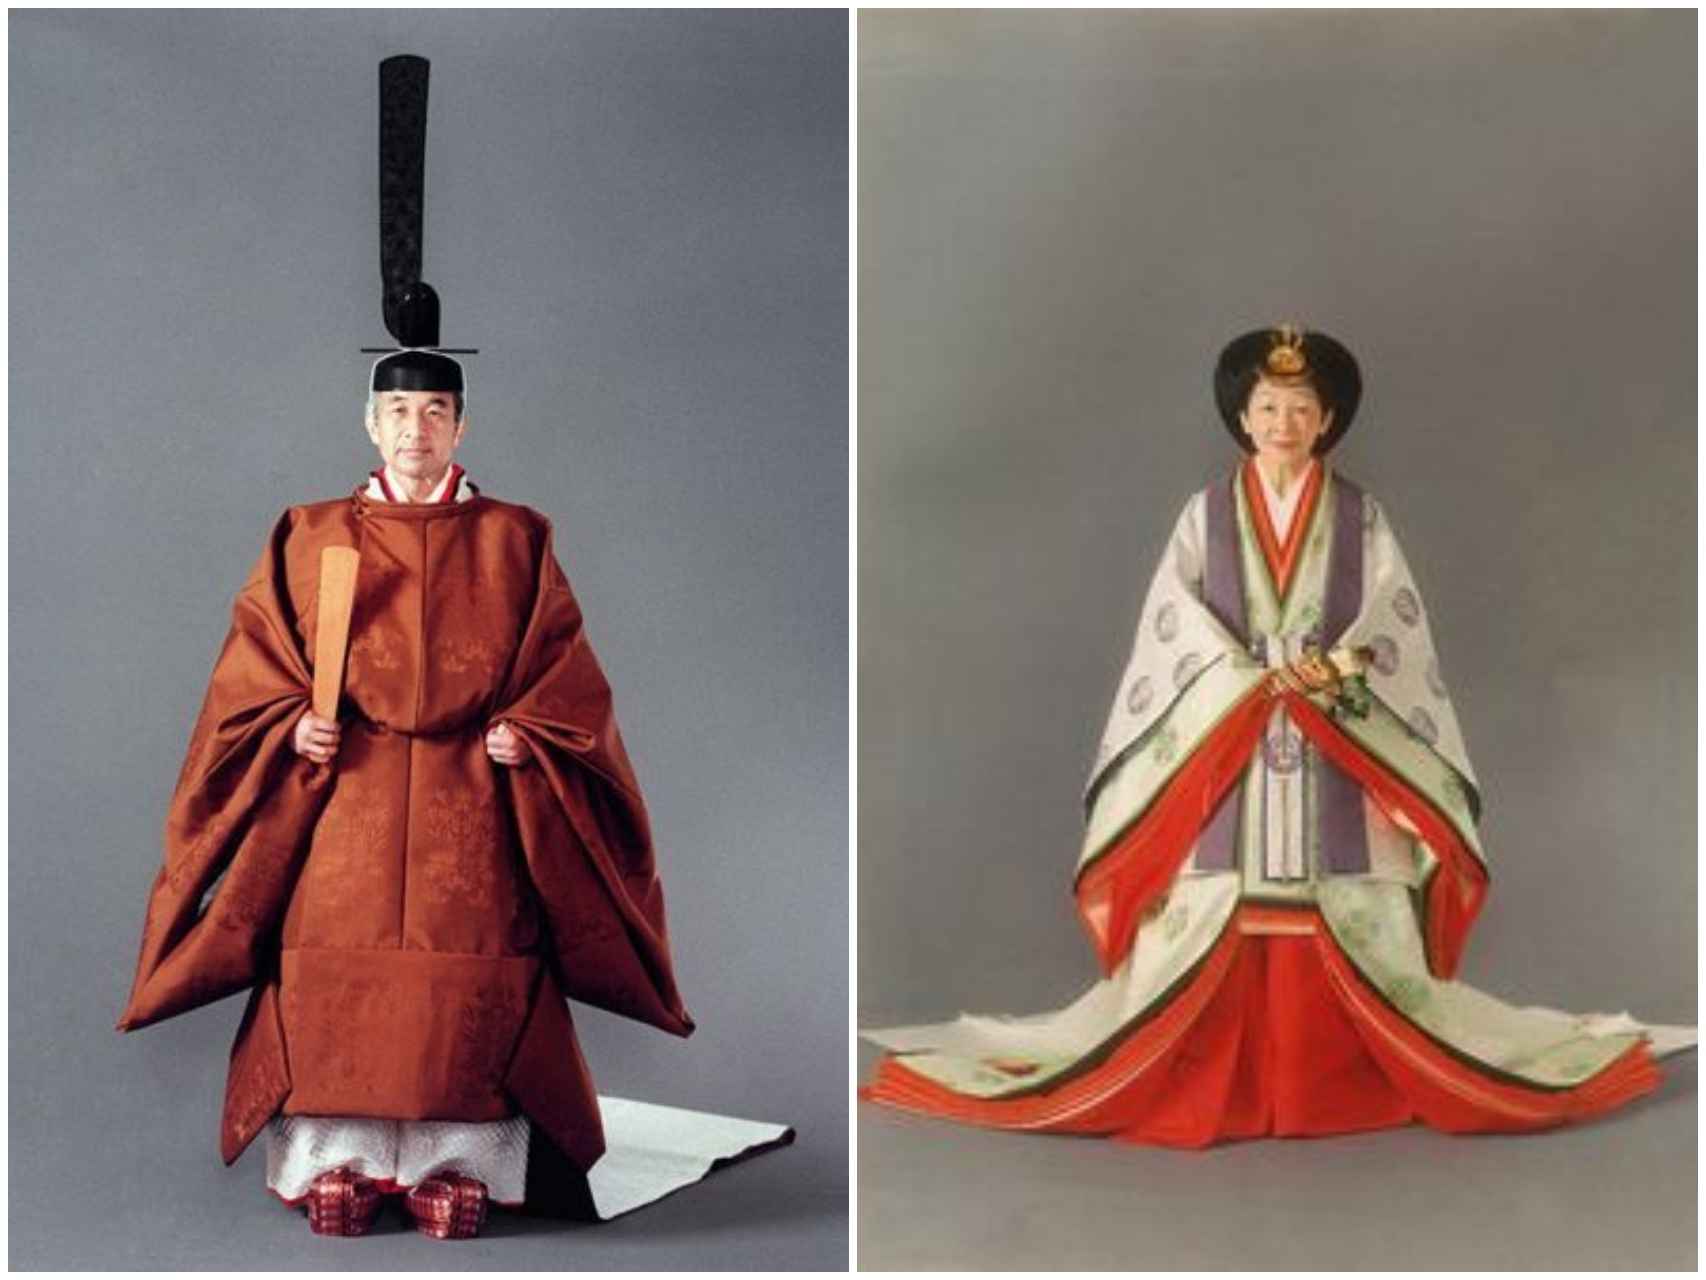 Vestimenta tradicional que llevaron el emperador Akihito y su mujer, Michiko, durante su ceremonia de entronización en 1990.